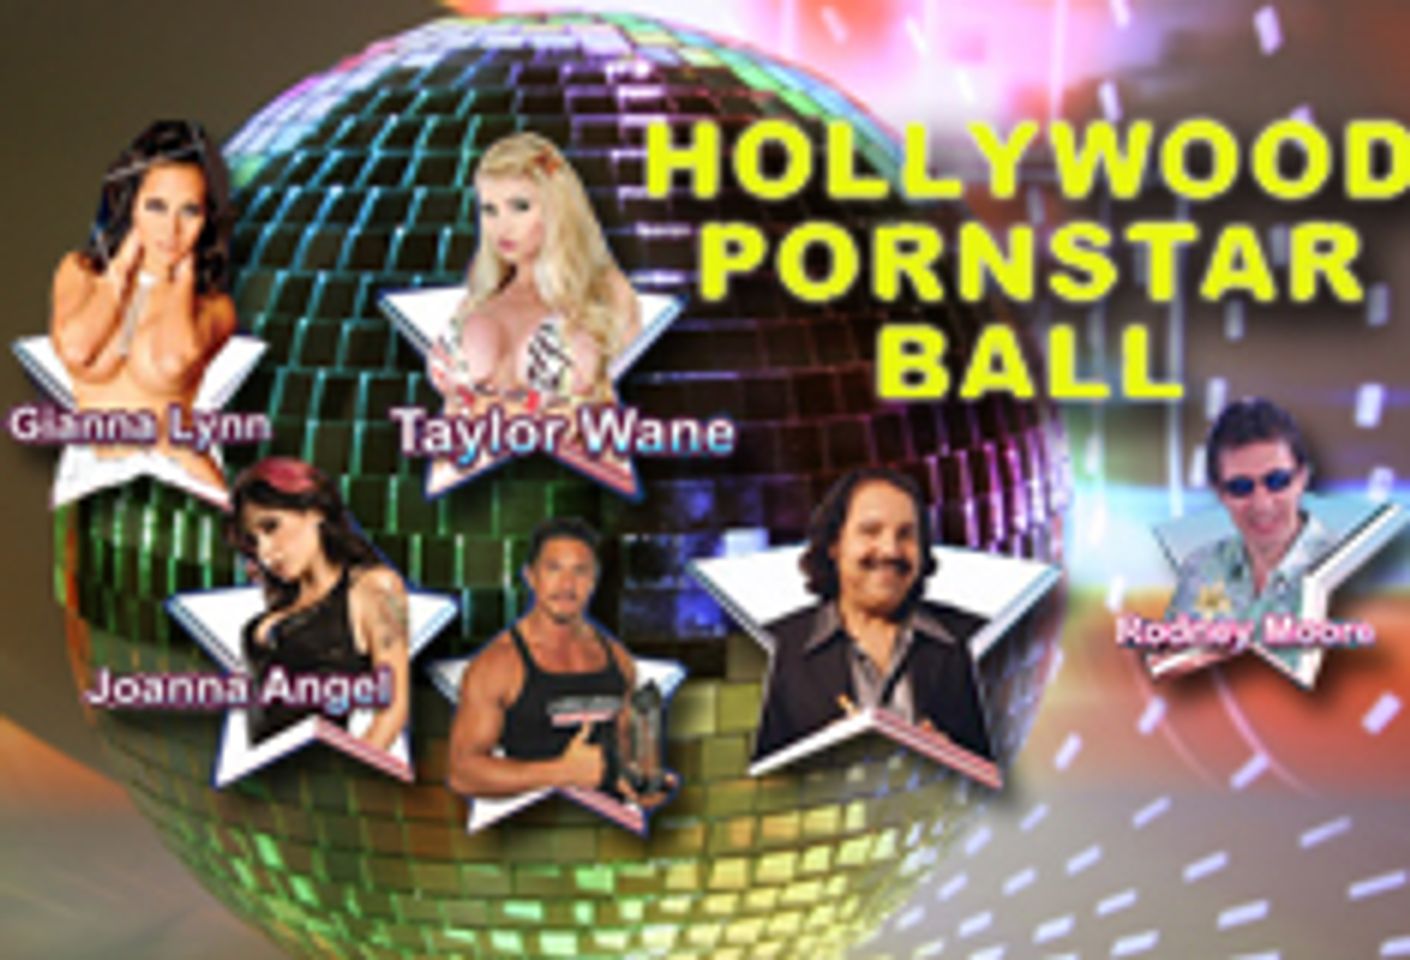 Rodney Moore Sponsors Hollywood Pornstar Ball